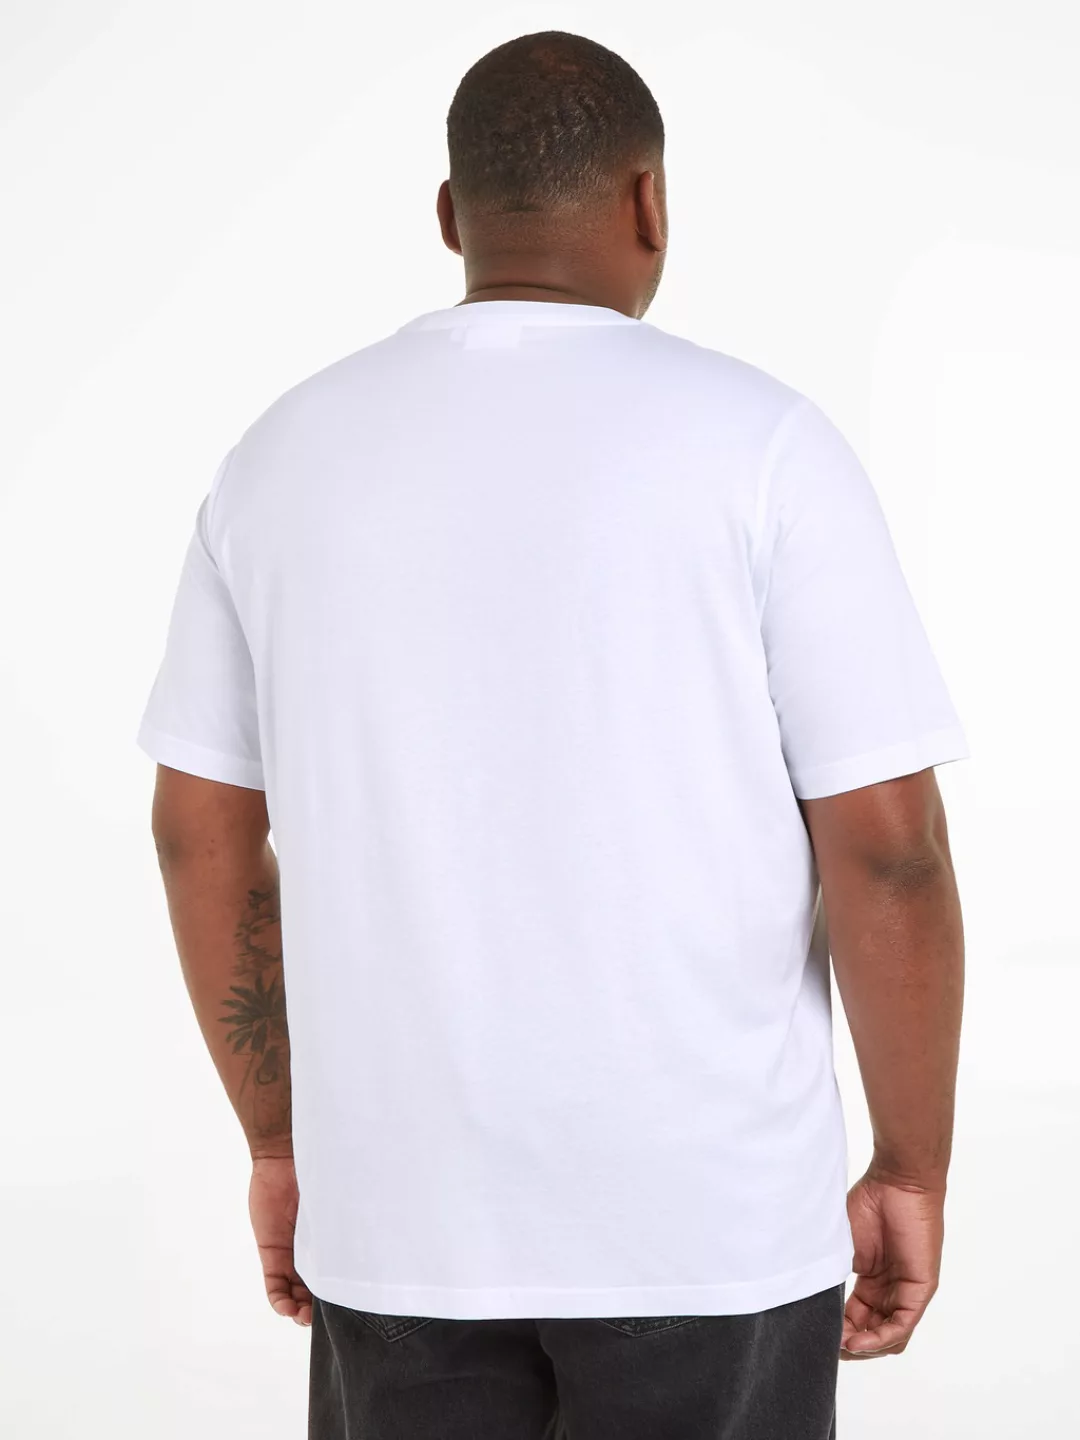 Calvin Klein Big&Tall T-Shirt BT_HERO LOGO COMFORT T-SHIRT in großen Größen günstig online kaufen